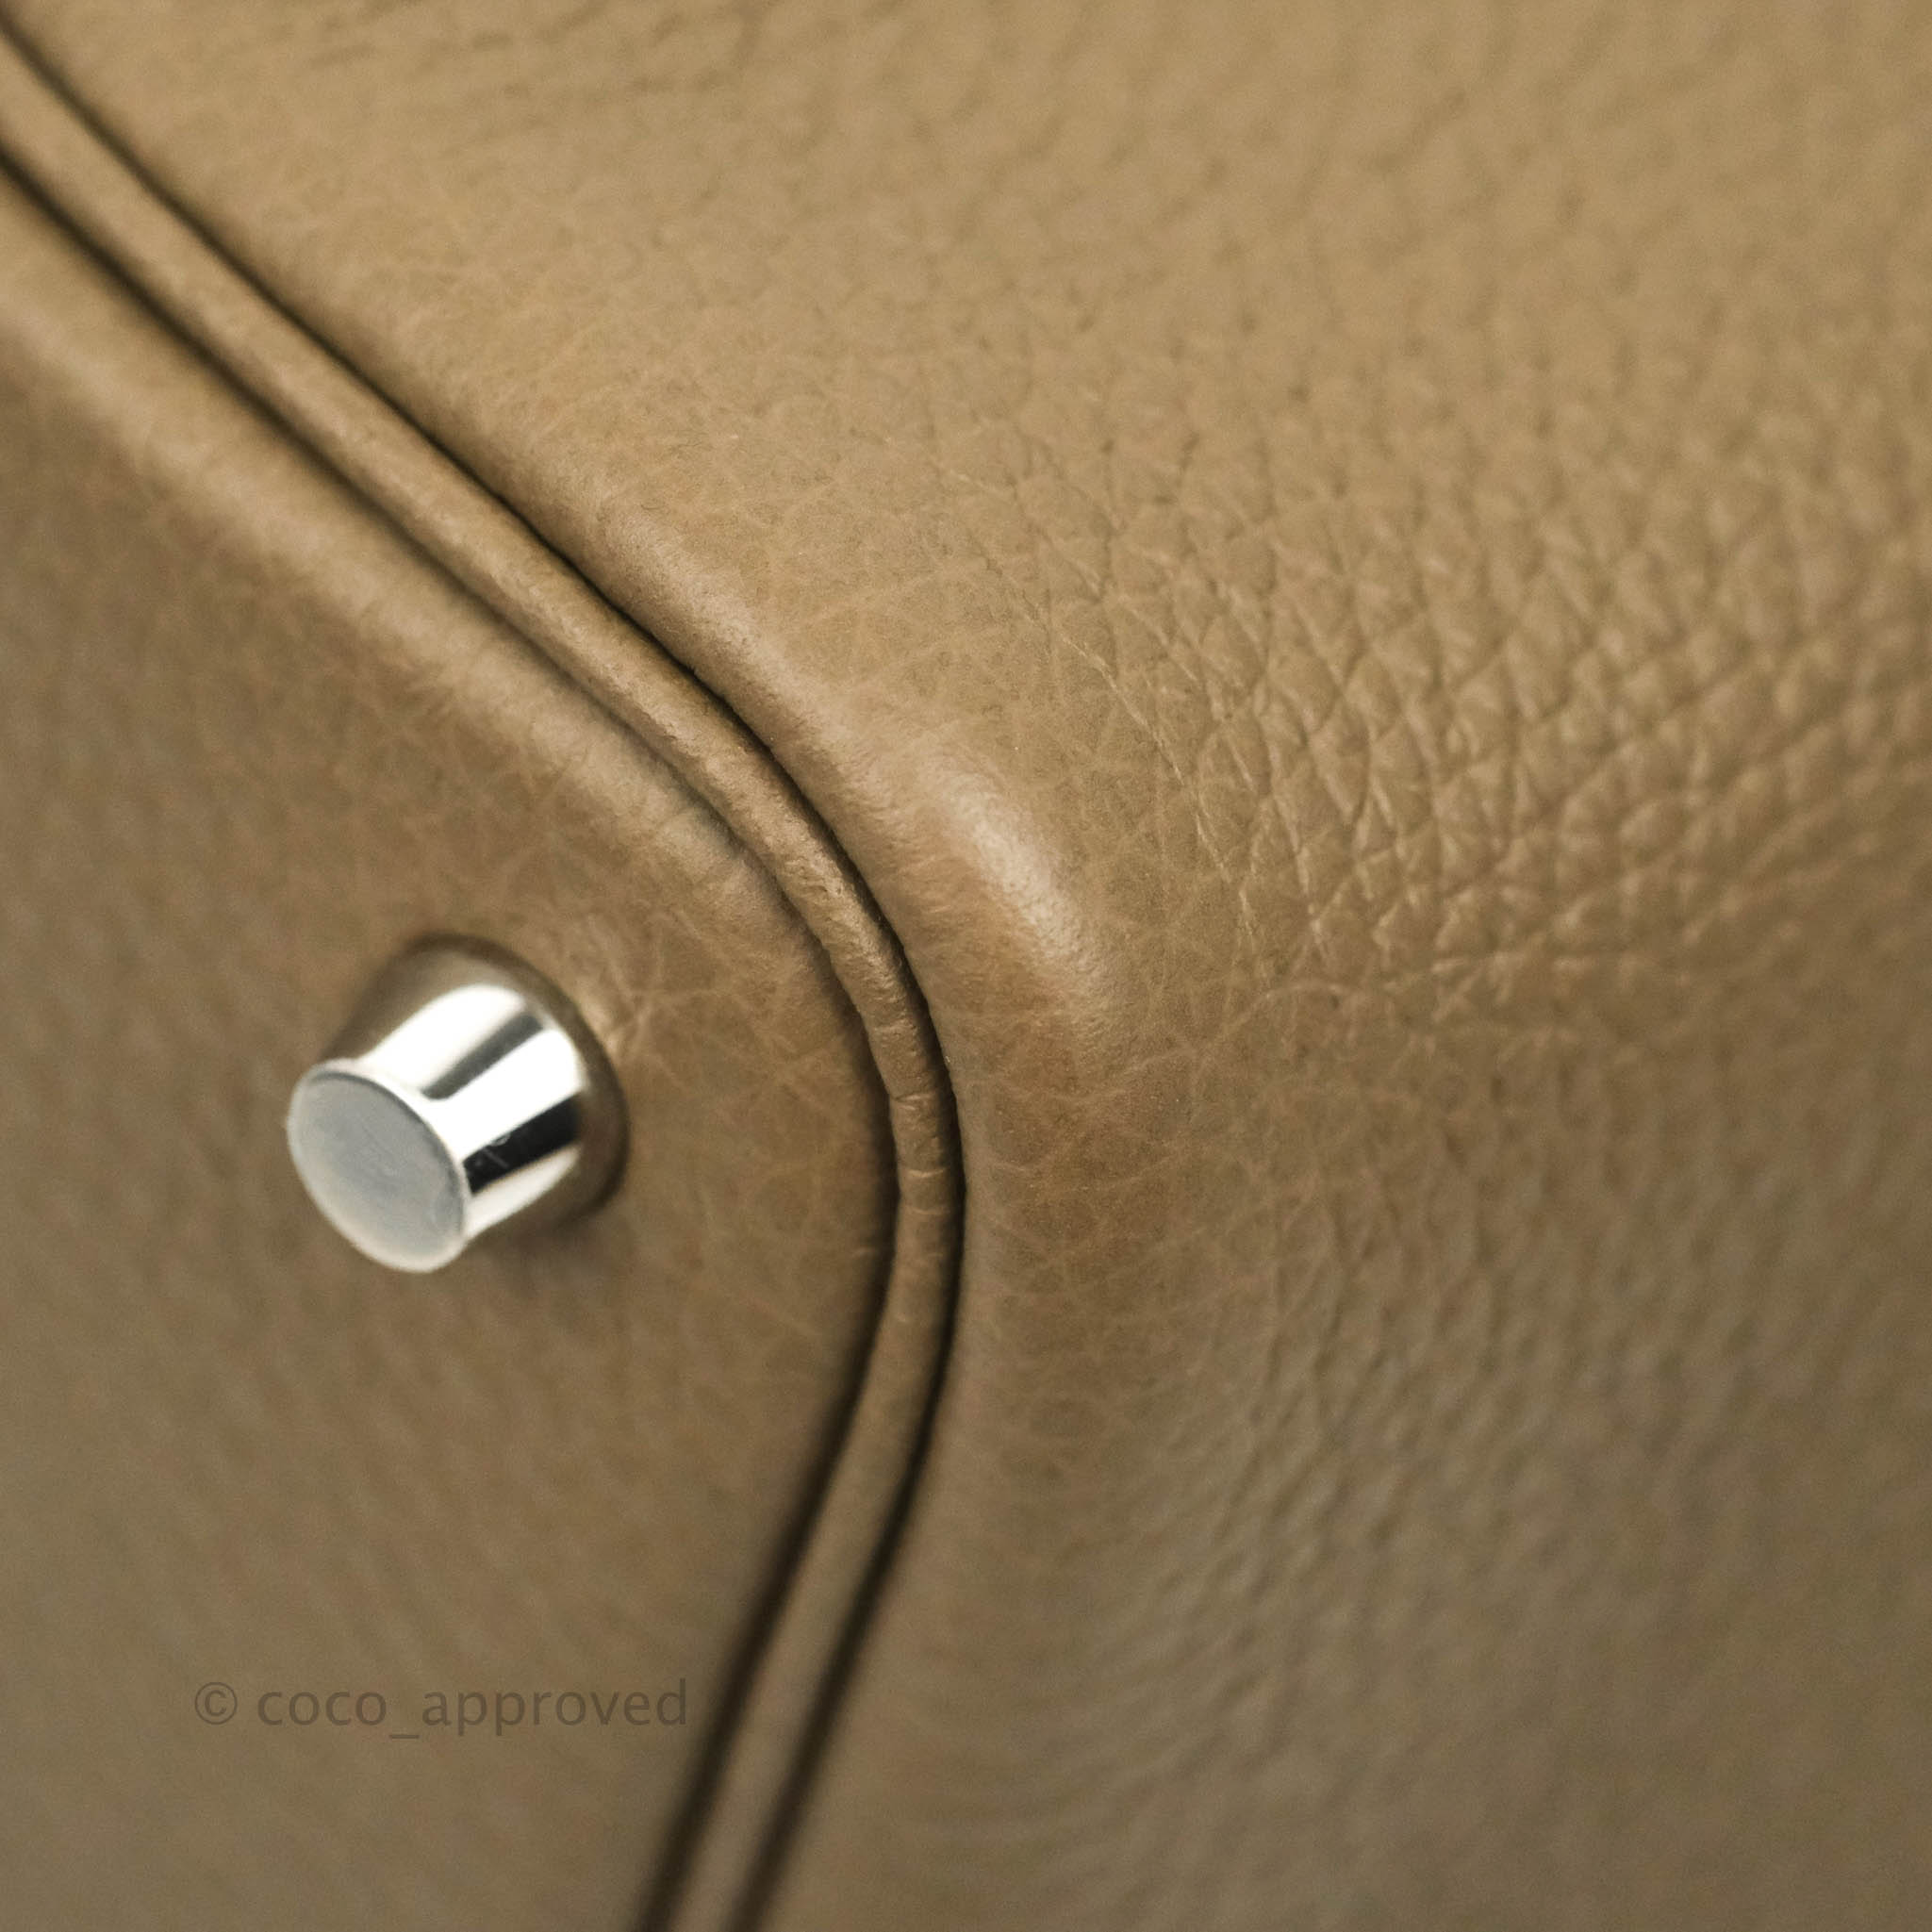 Hermès Picotin Lock Etoupe 18 Clemence Leather Palladium Hardware – SukiLux